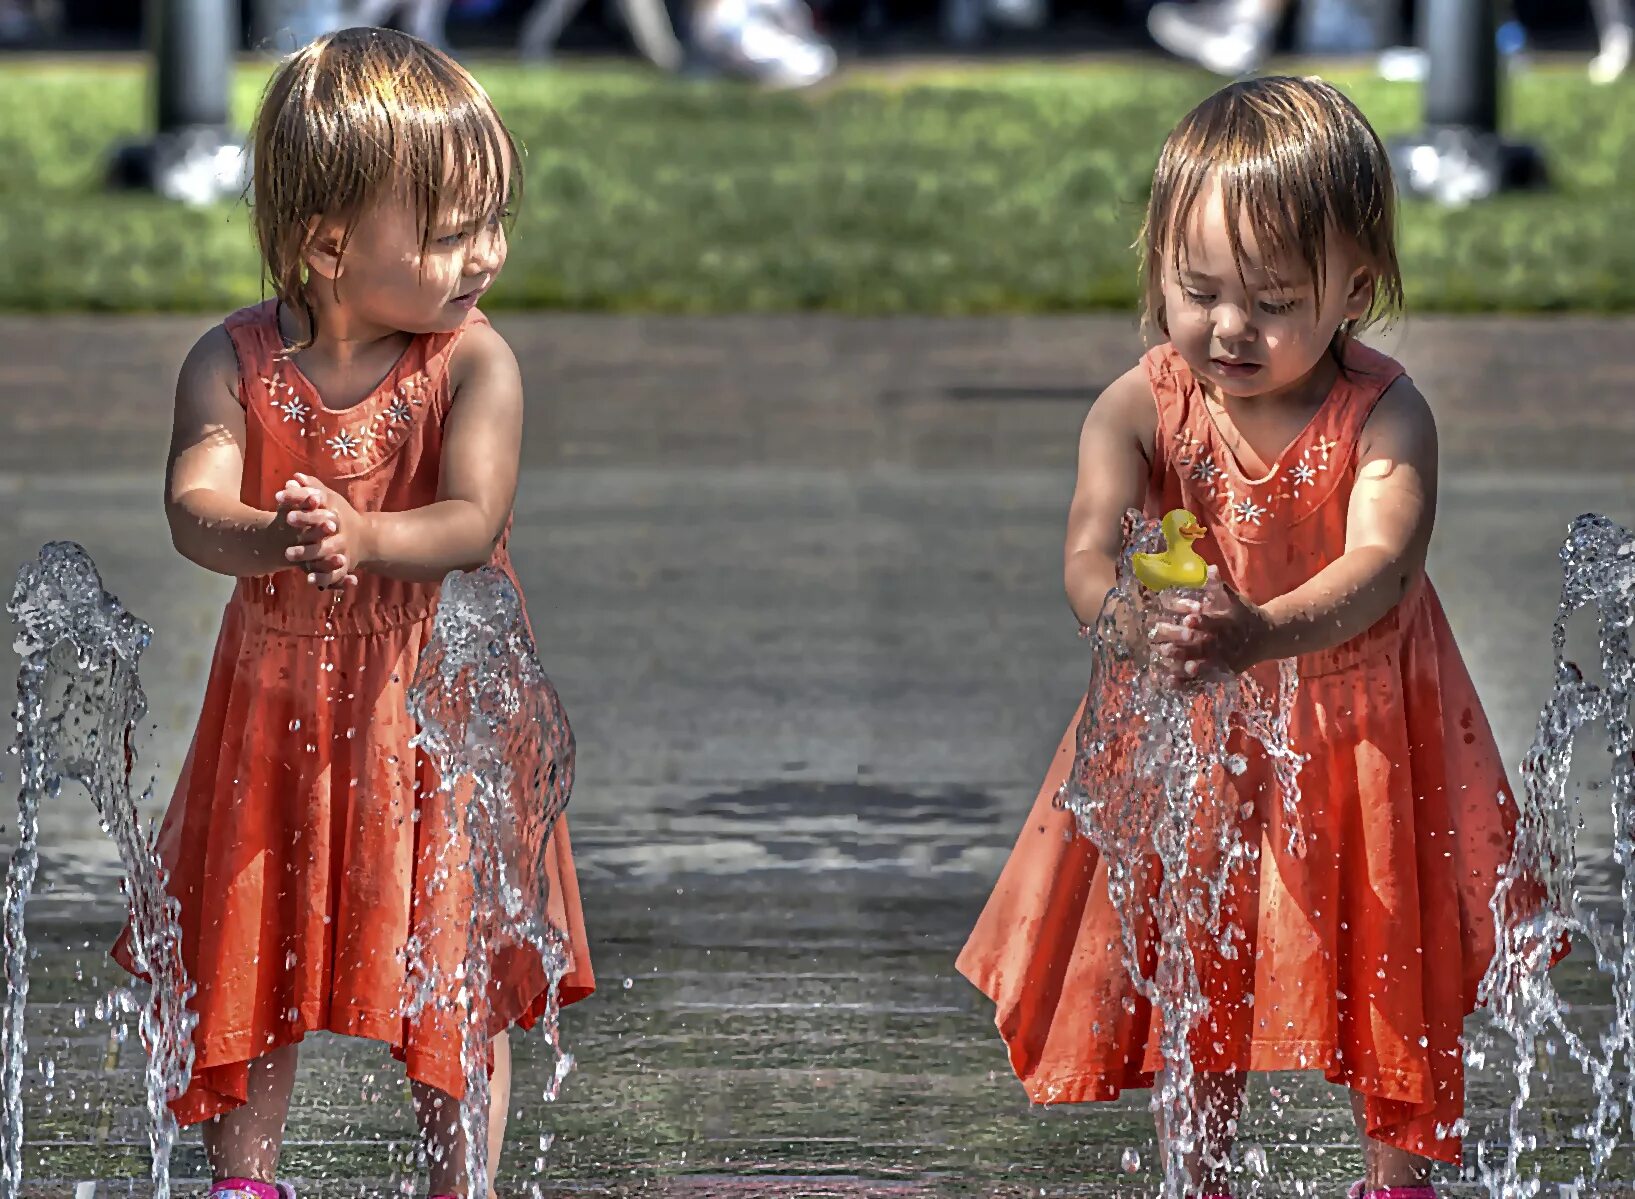 Мокрое платье для детей. Дети играют в мокрой одежде. Мокрое платье картинка для детей. Фликр девочка фонтан. Мокрые сестренки